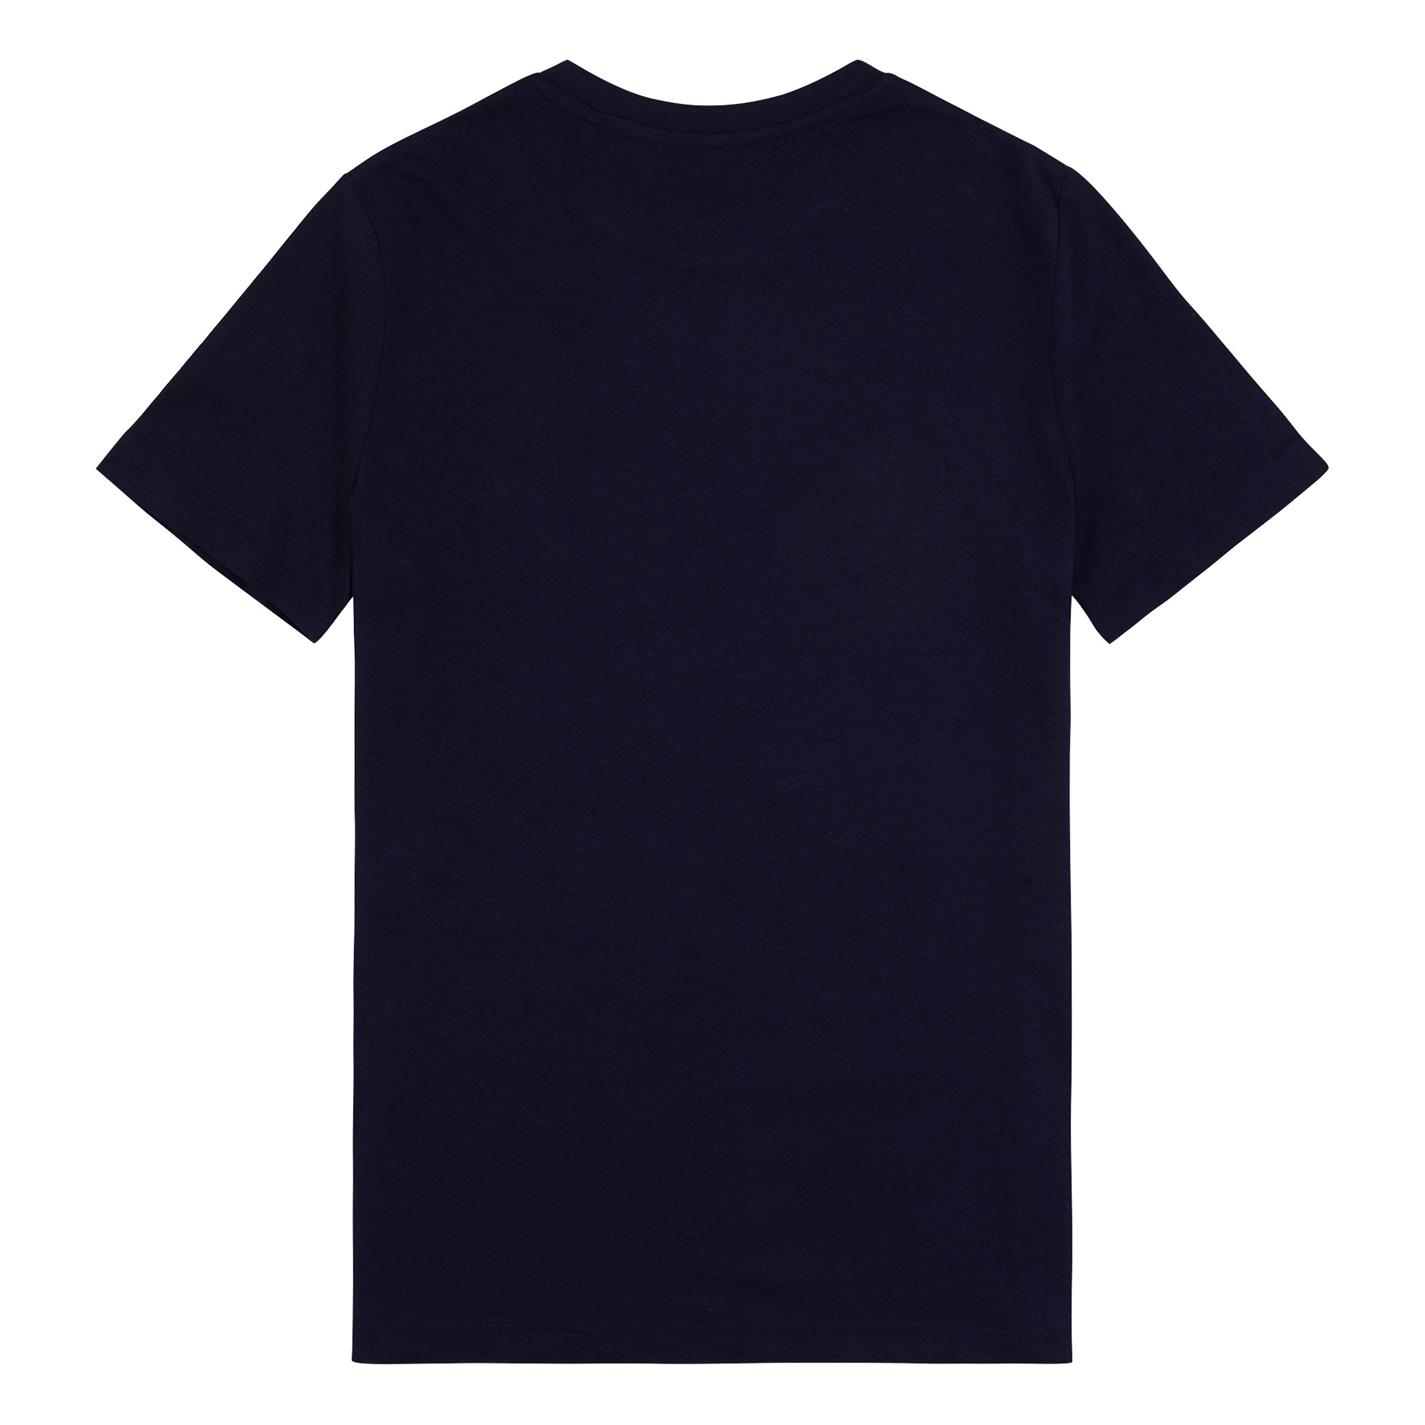 Tricouri sport Tricou cu logo Jack Wills Forstal Script - pentru fete pentru Copii bleumarin